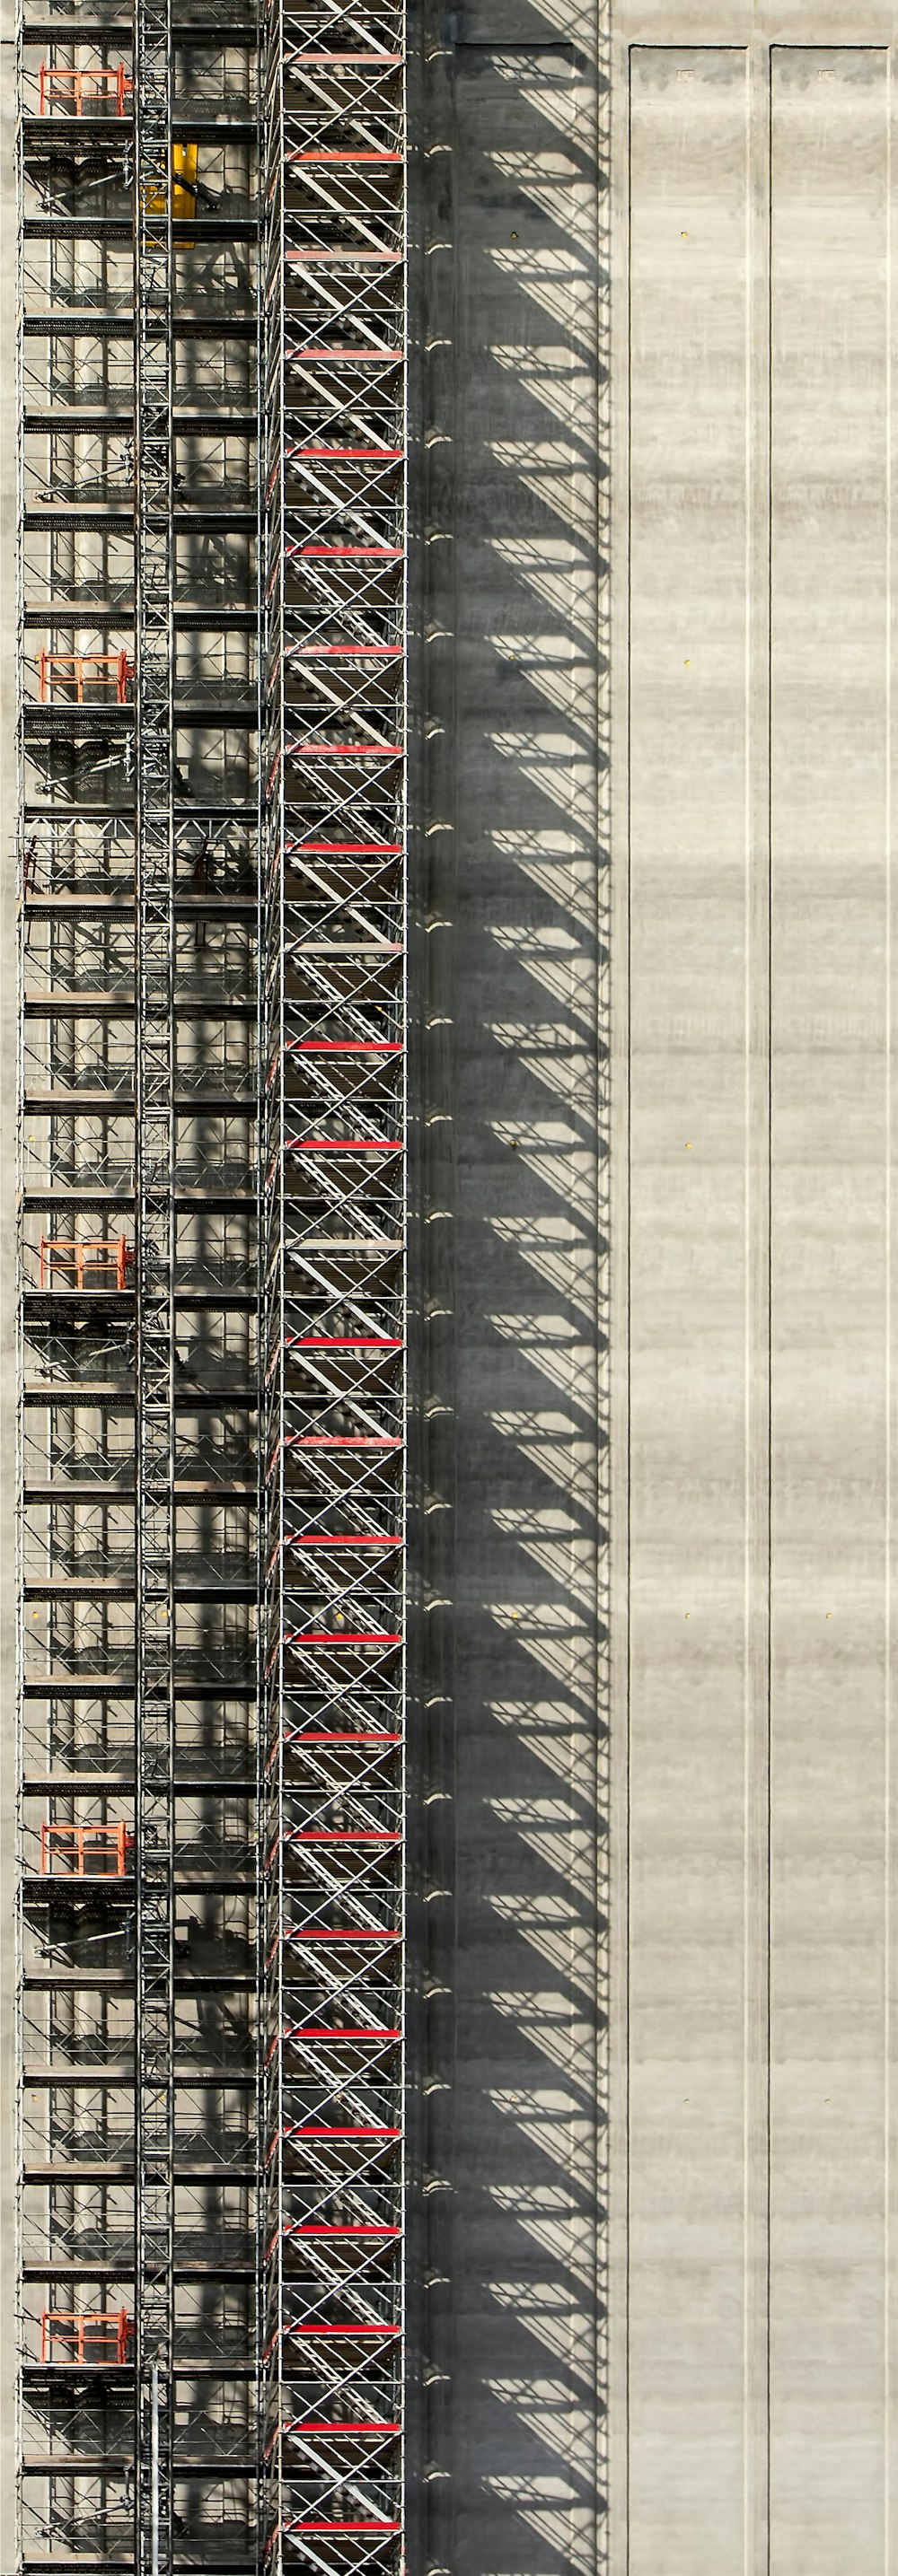 Photographie aérienne d’échafaudages en acier gris